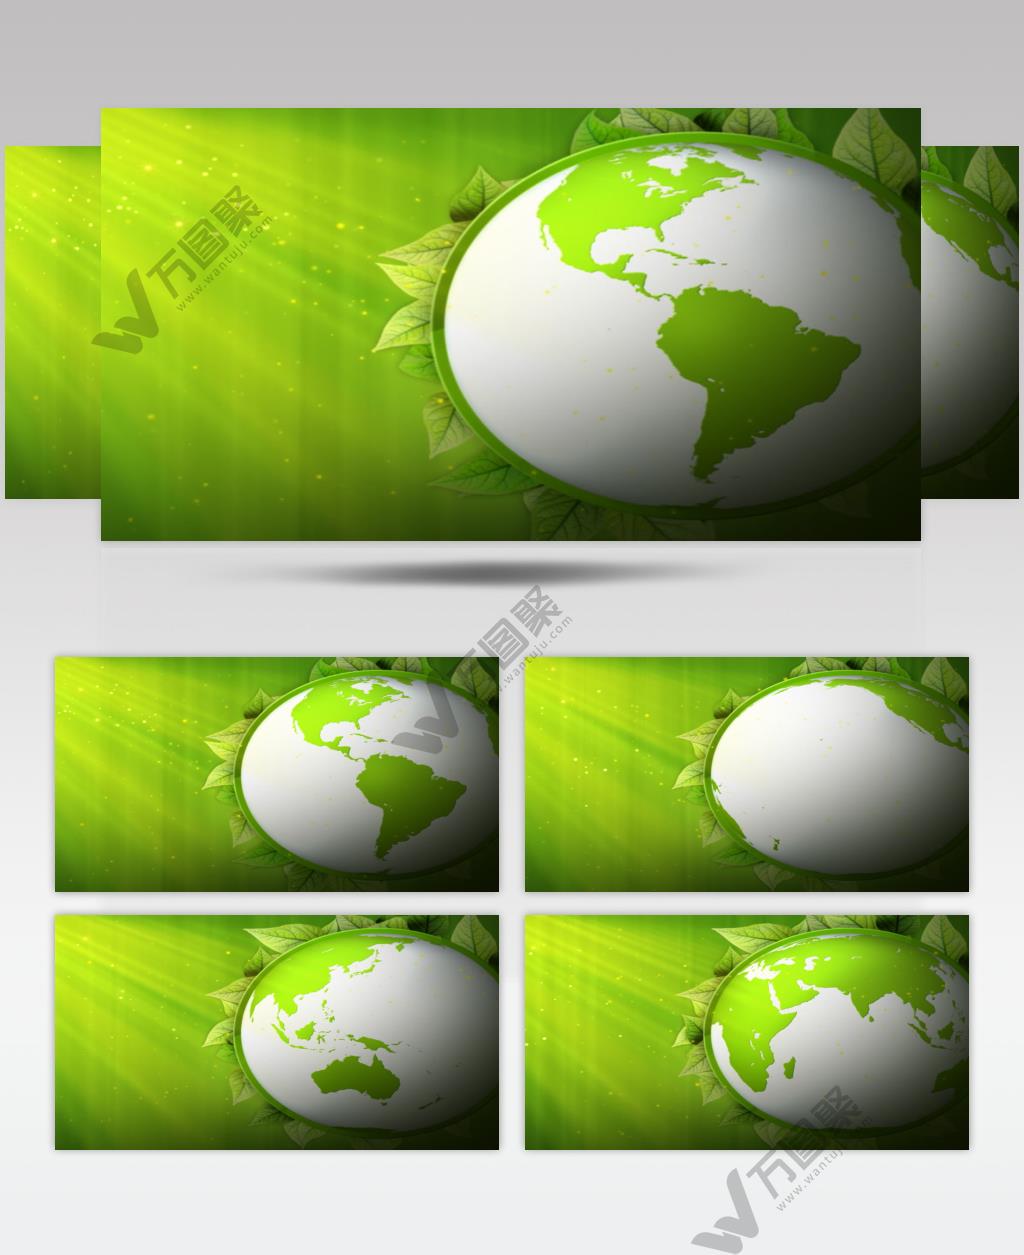 公益环保类的背景循环素材  GreenPlanetSD 视频素材下载